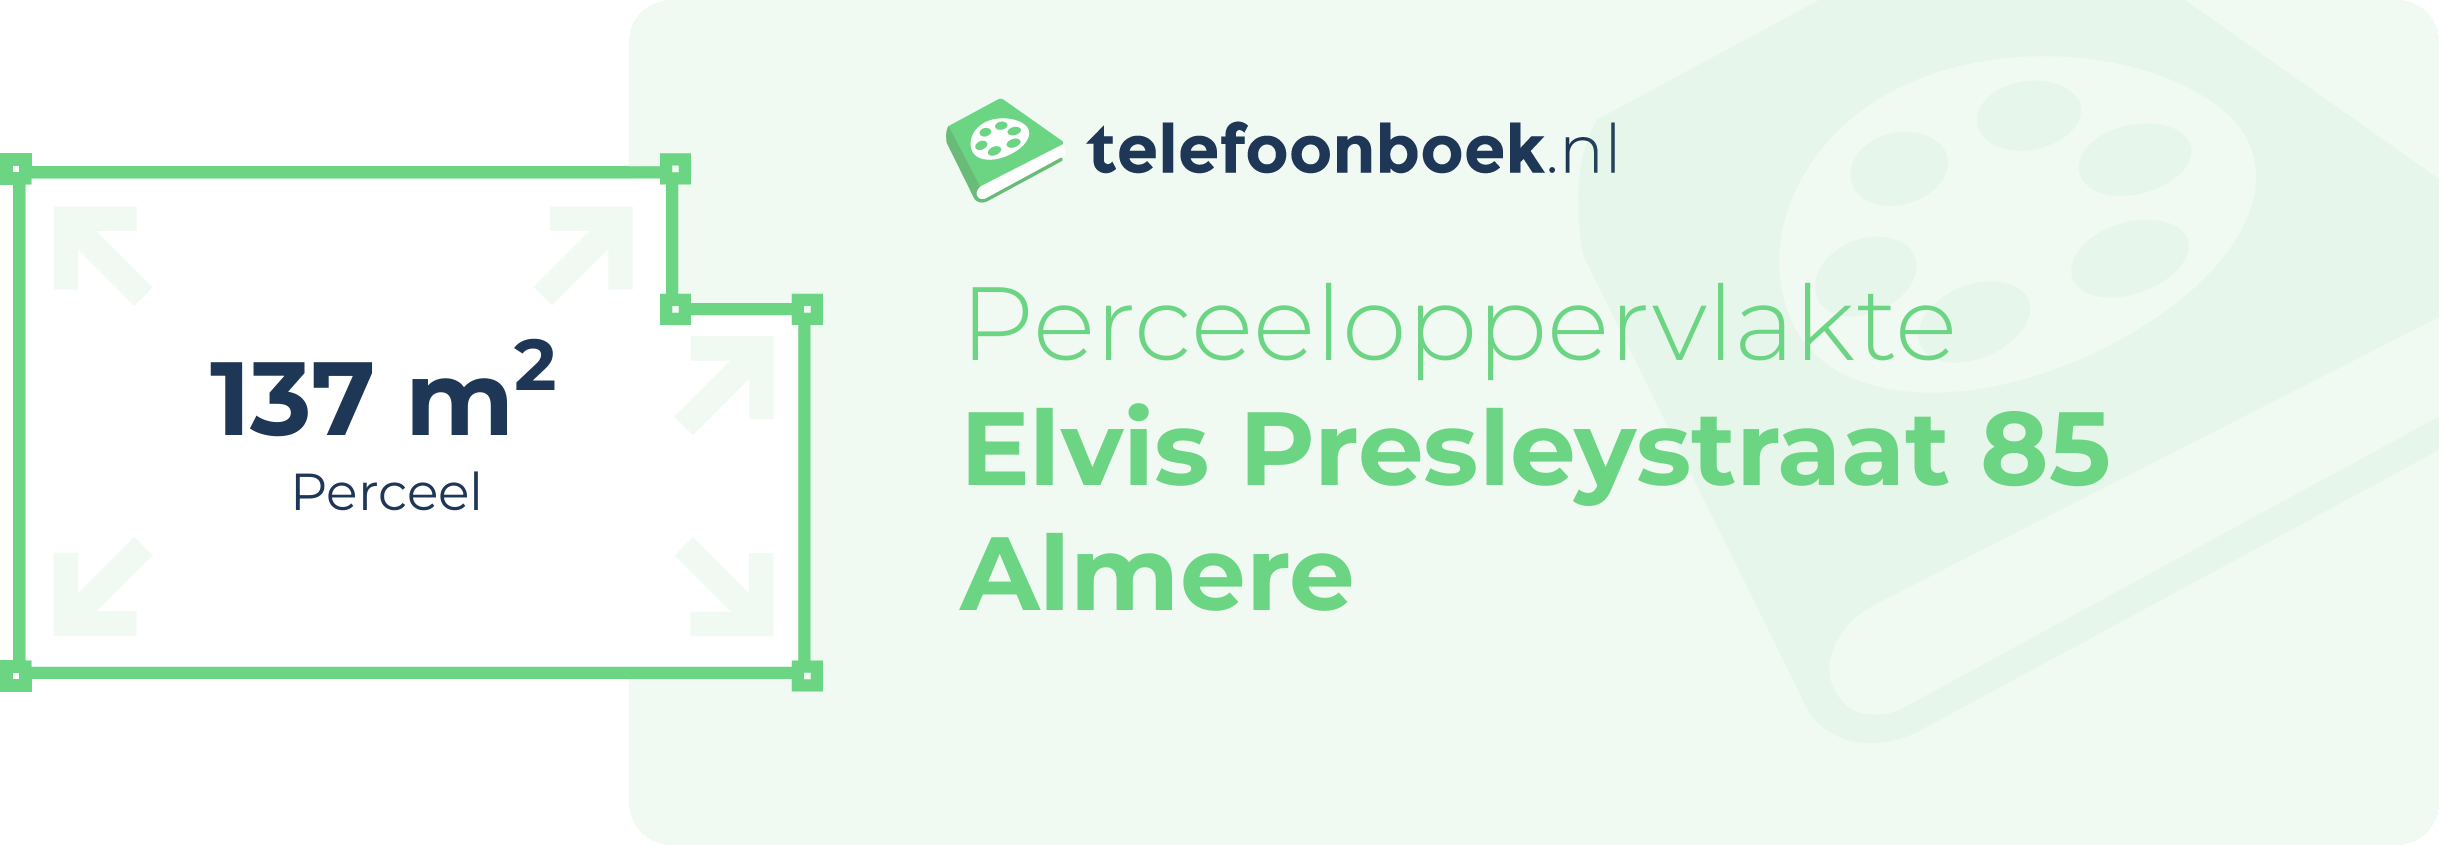 Perceeloppervlakte Elvis Presleystraat 85 Almere